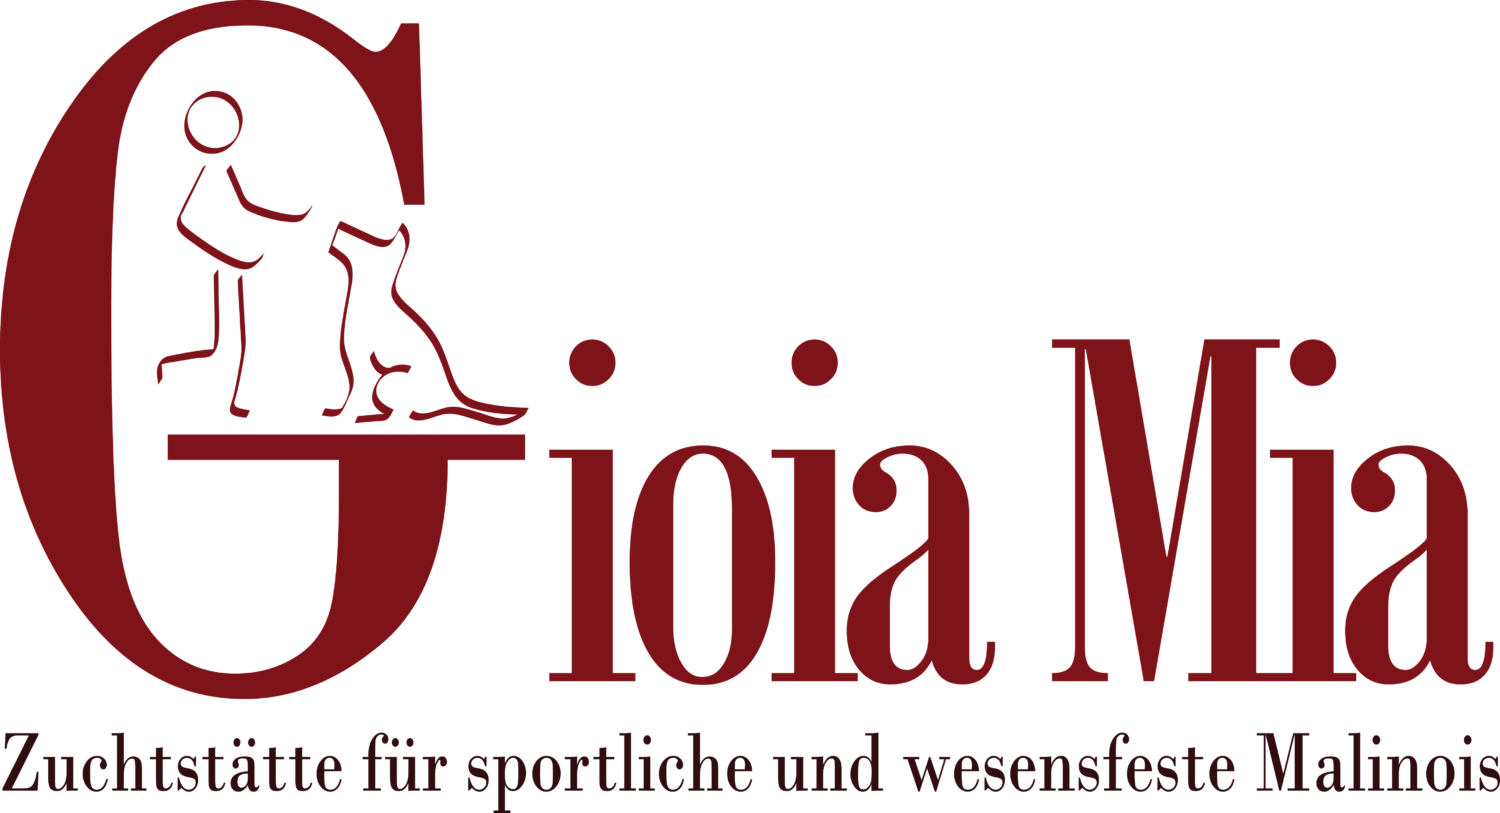 Malinoiszuchtstätte Gioia mia Logo